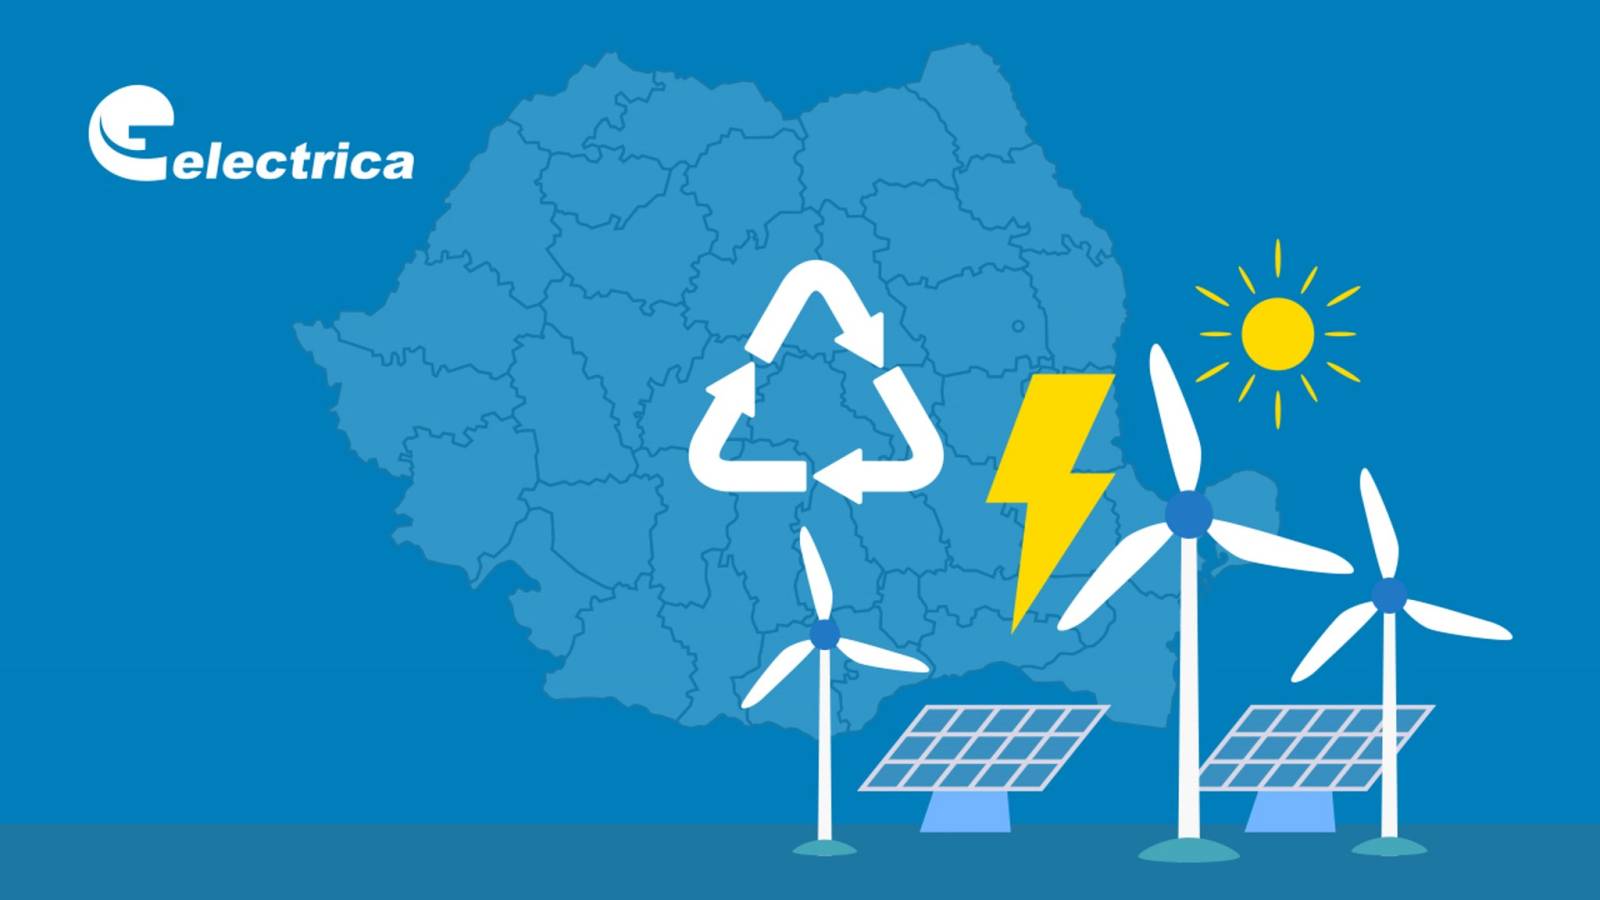 Electrica Officiel anmodning SIDSTE MINUTE Transmitteret OBS Millioner af rumænske kunder